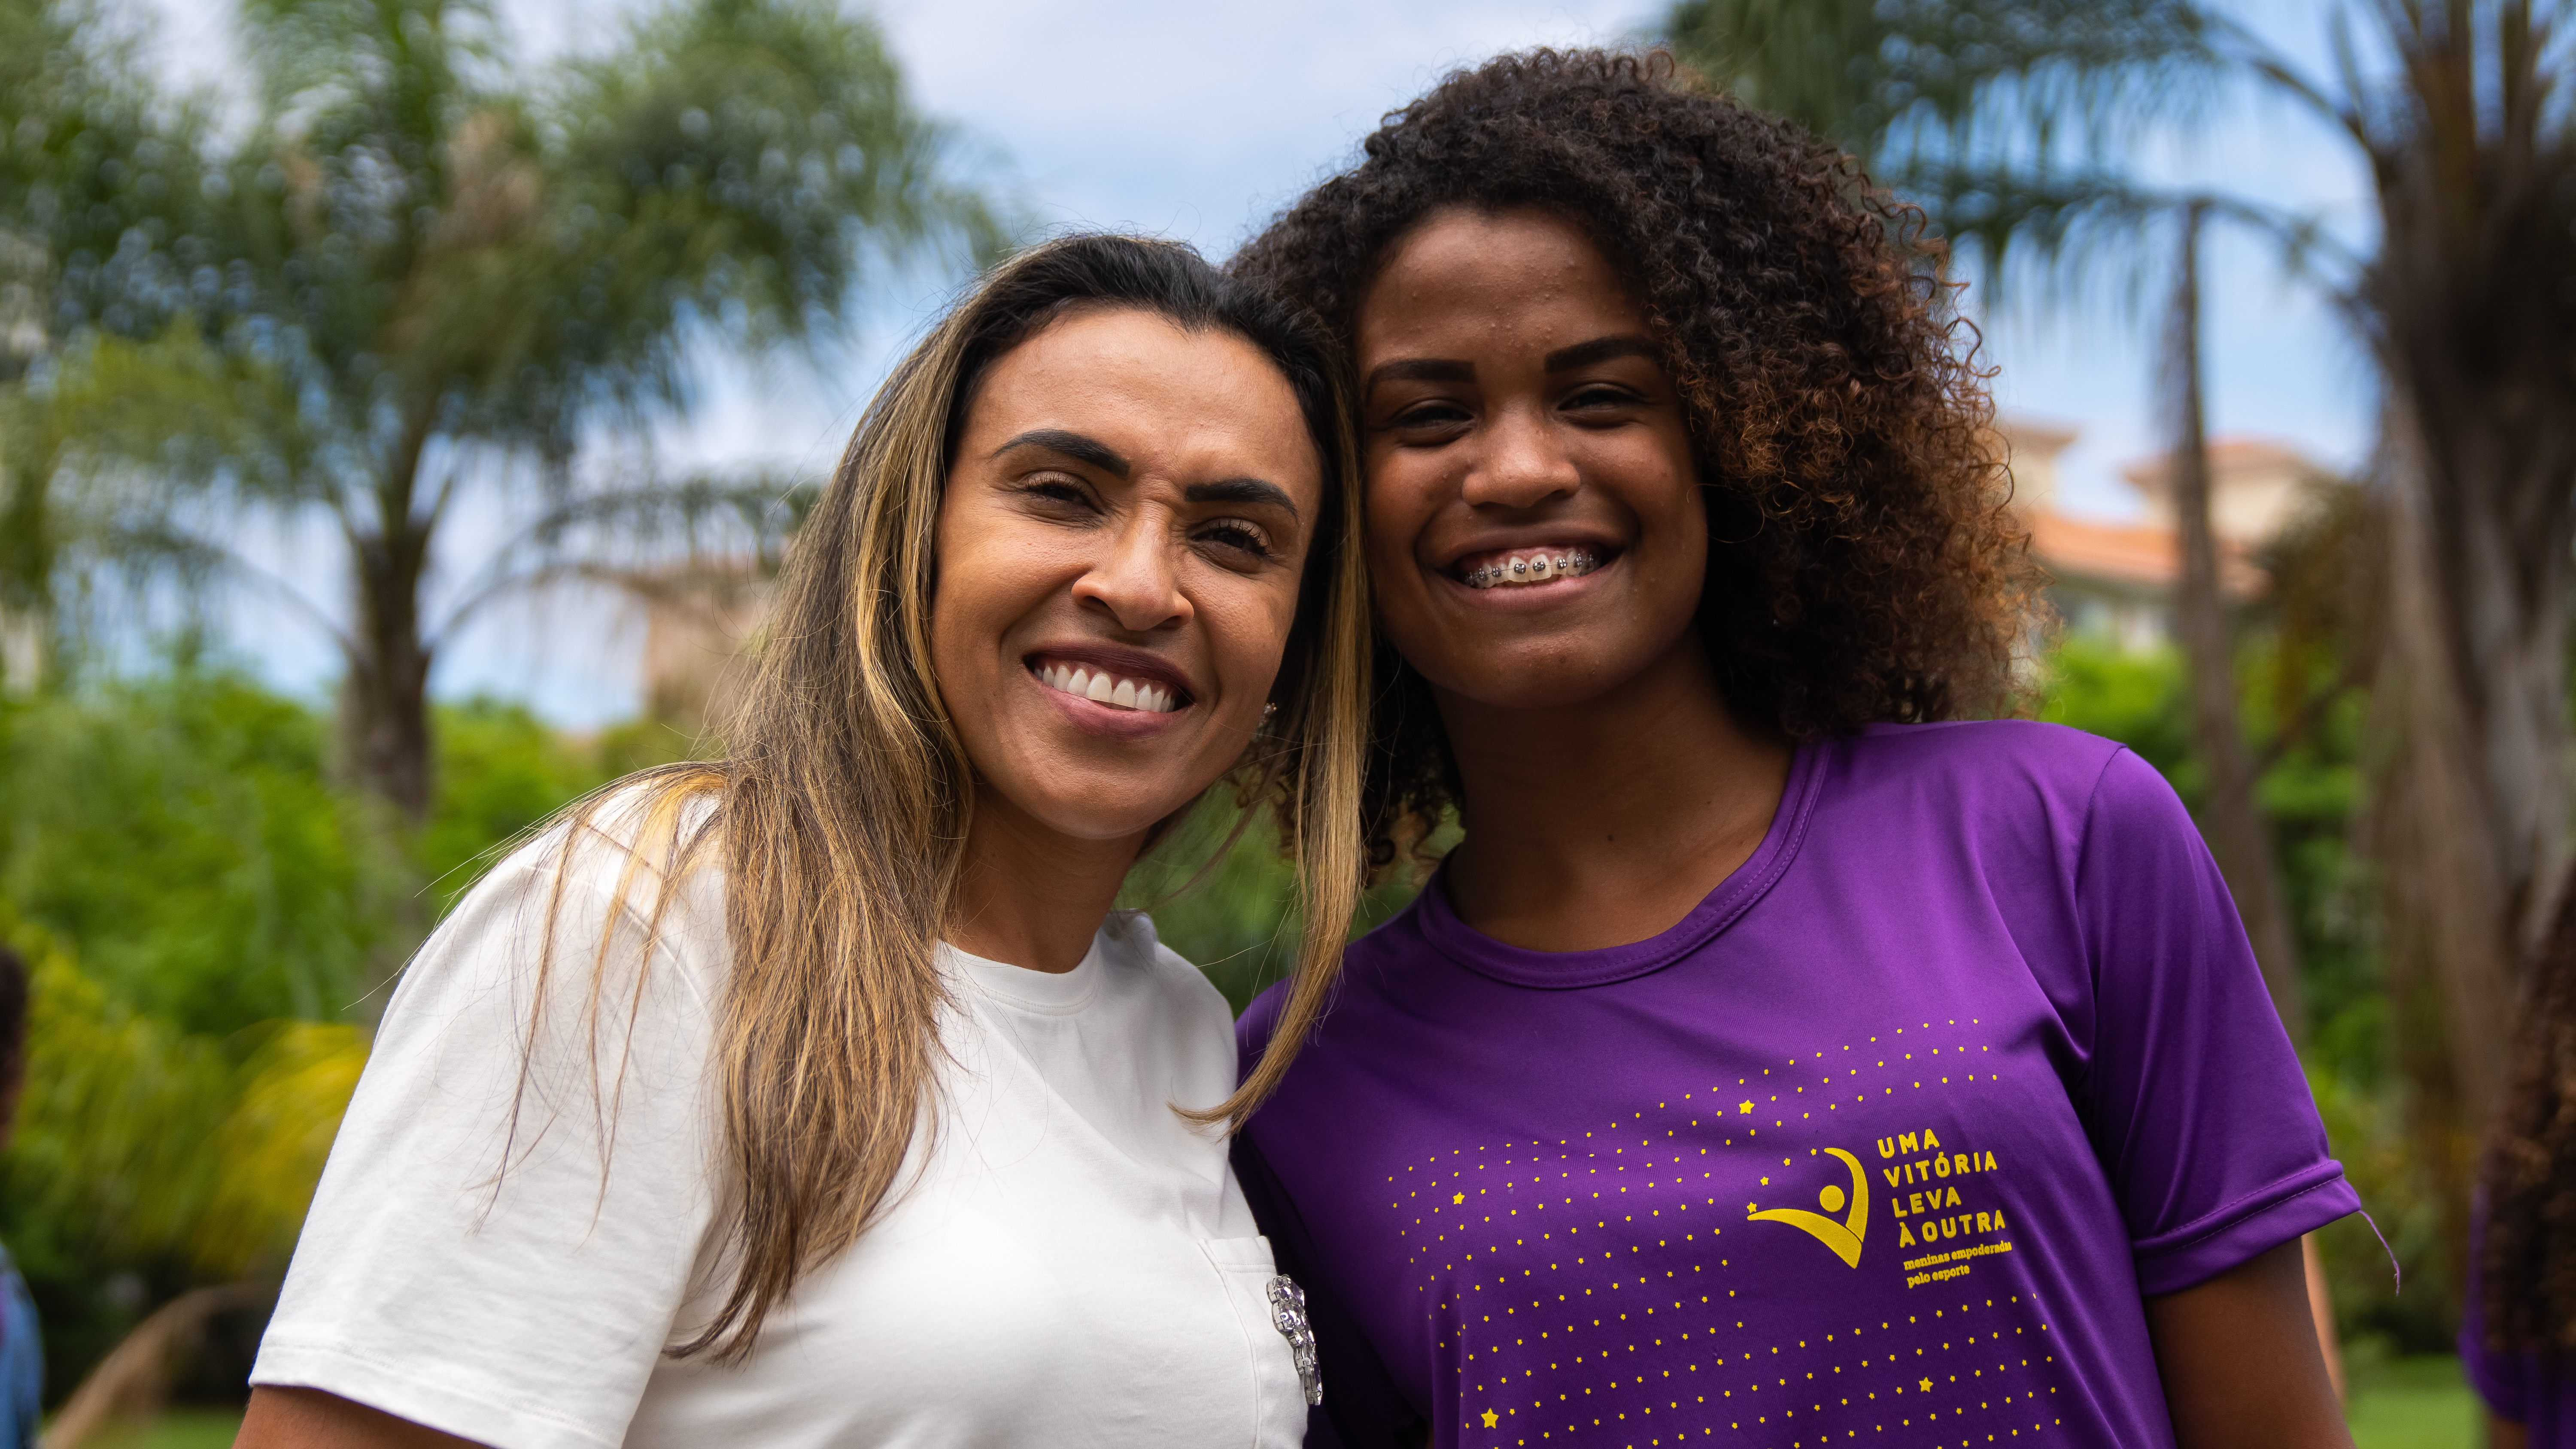 Dia da Mulher Afro latinoamericana, afro caribenha e da diáspora, um dia de celebração e visibilidade: a ONU Mulheres Brasil incentiva o empoderamento de meninas e jovens negras em diversas áreas/noticias mulheres no esporte mulheres negras meninas igualdade de genero direitosdasmulheres 